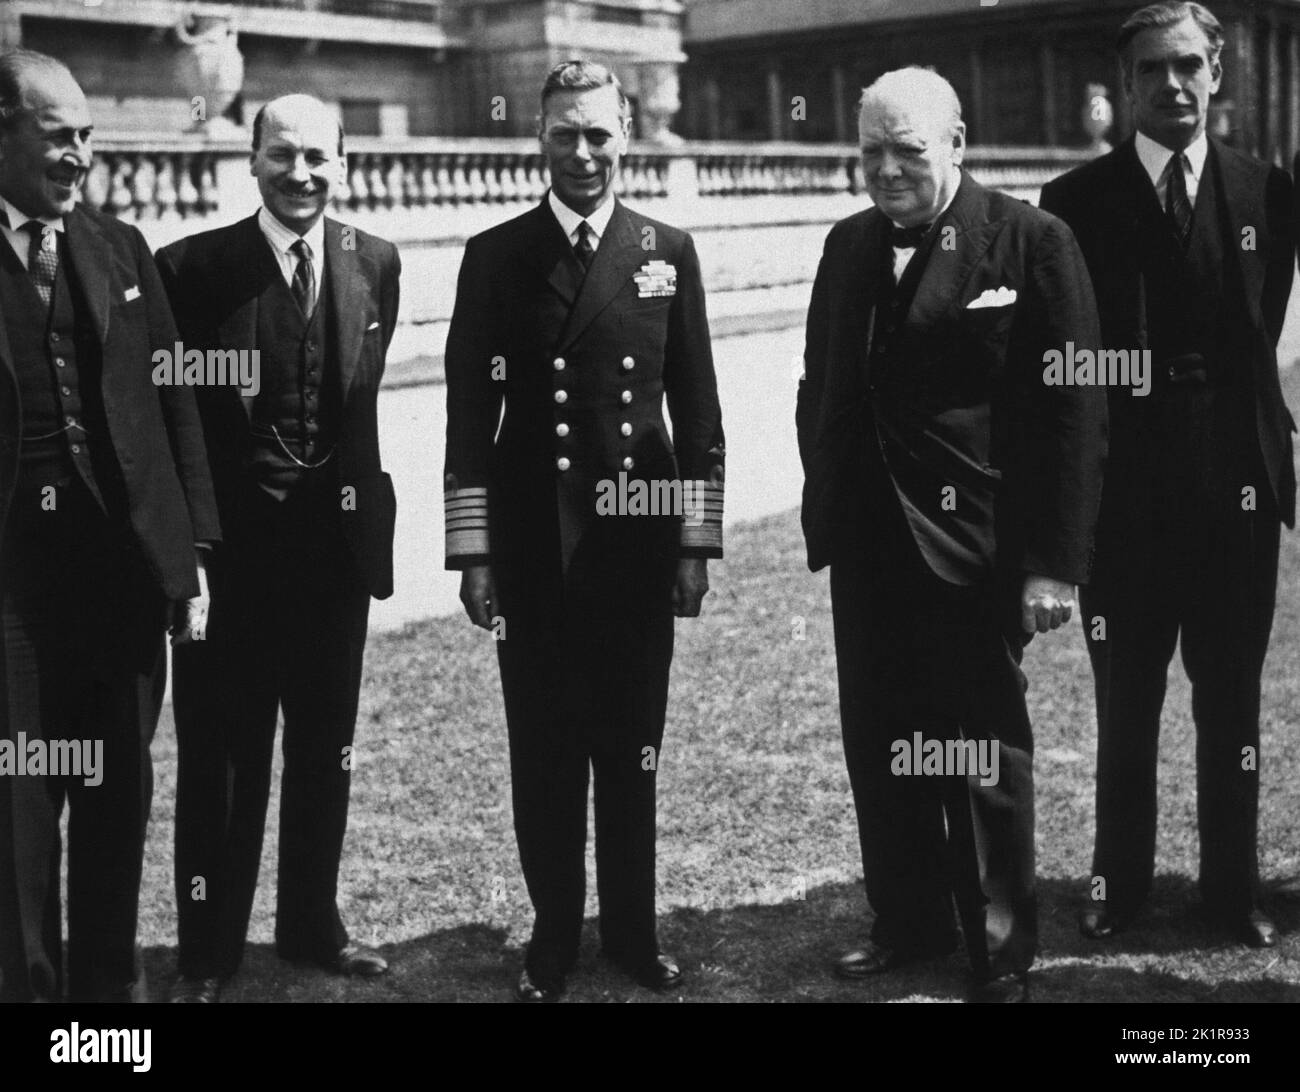 Churchill au palais de Buckingham avec d'autres chefs de guerre. De gauche à droite : Sir John Anderson, Clement Attlee, H.M. The King, WSC, Anthony Eden. Août 1944. Banque D'Images